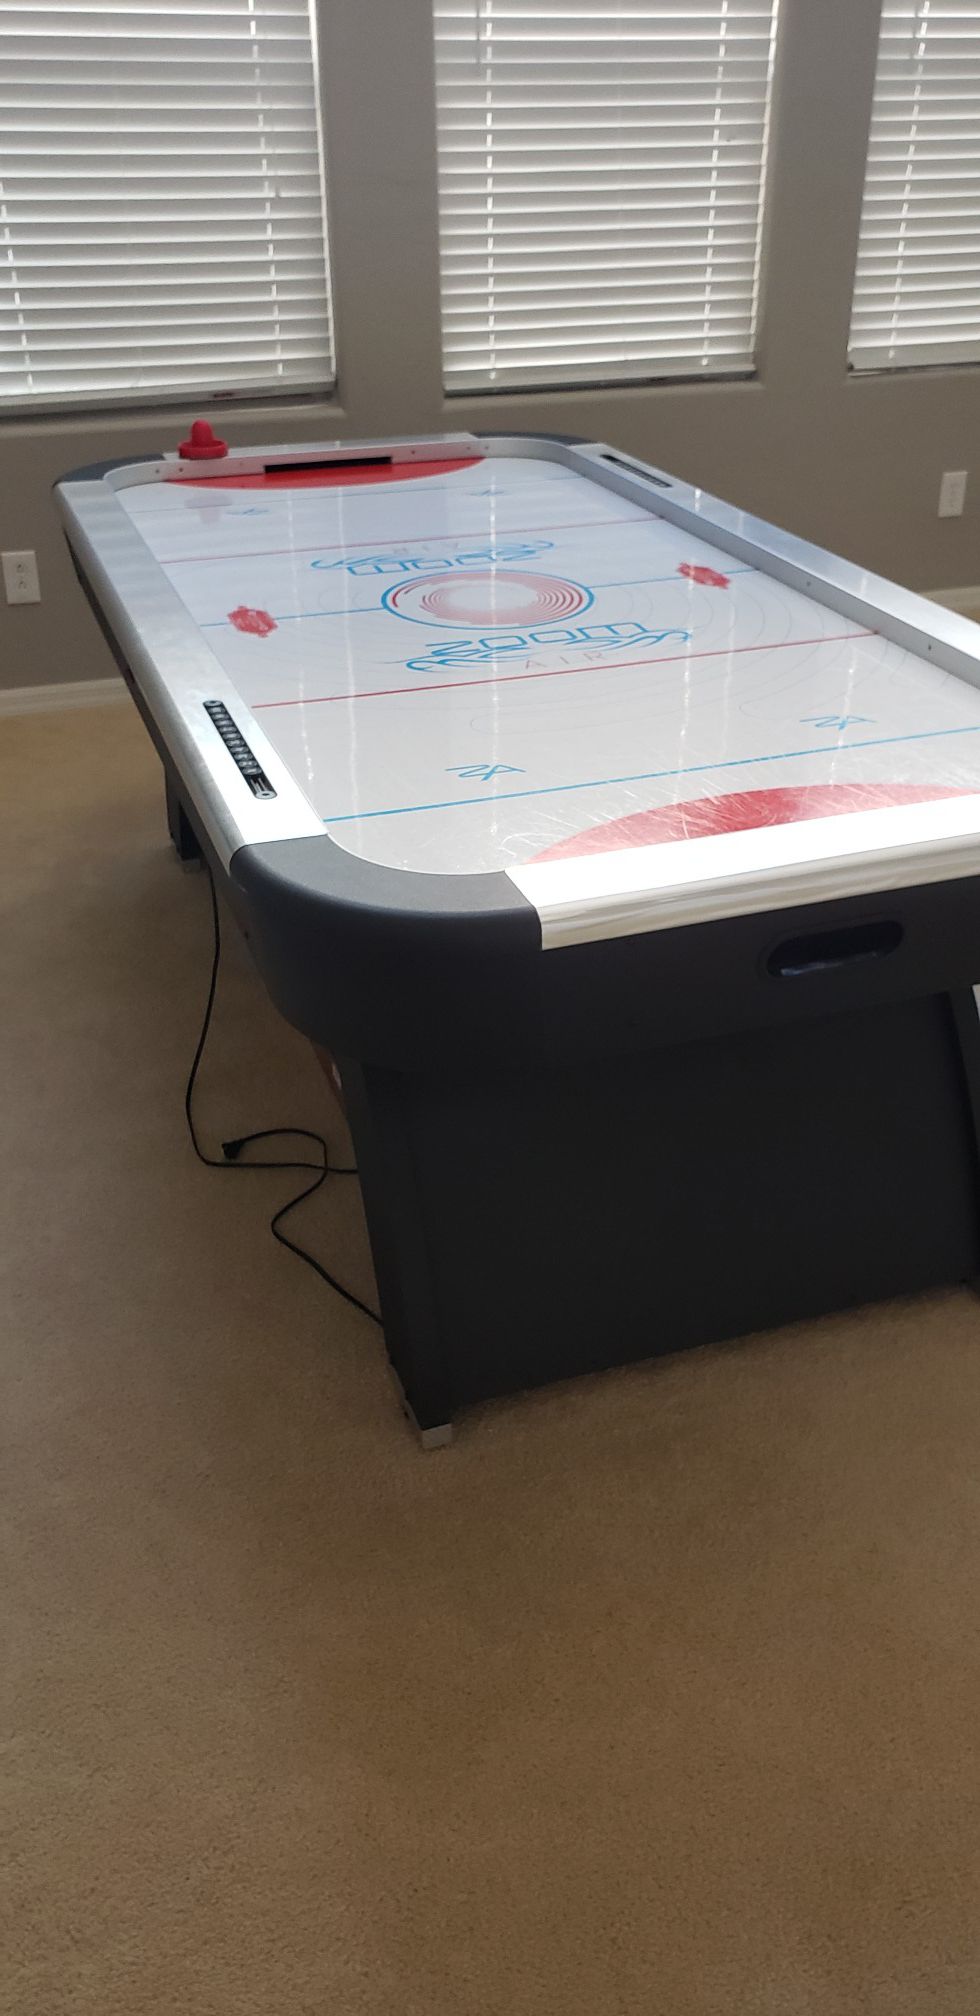 Arcade size air hockey table